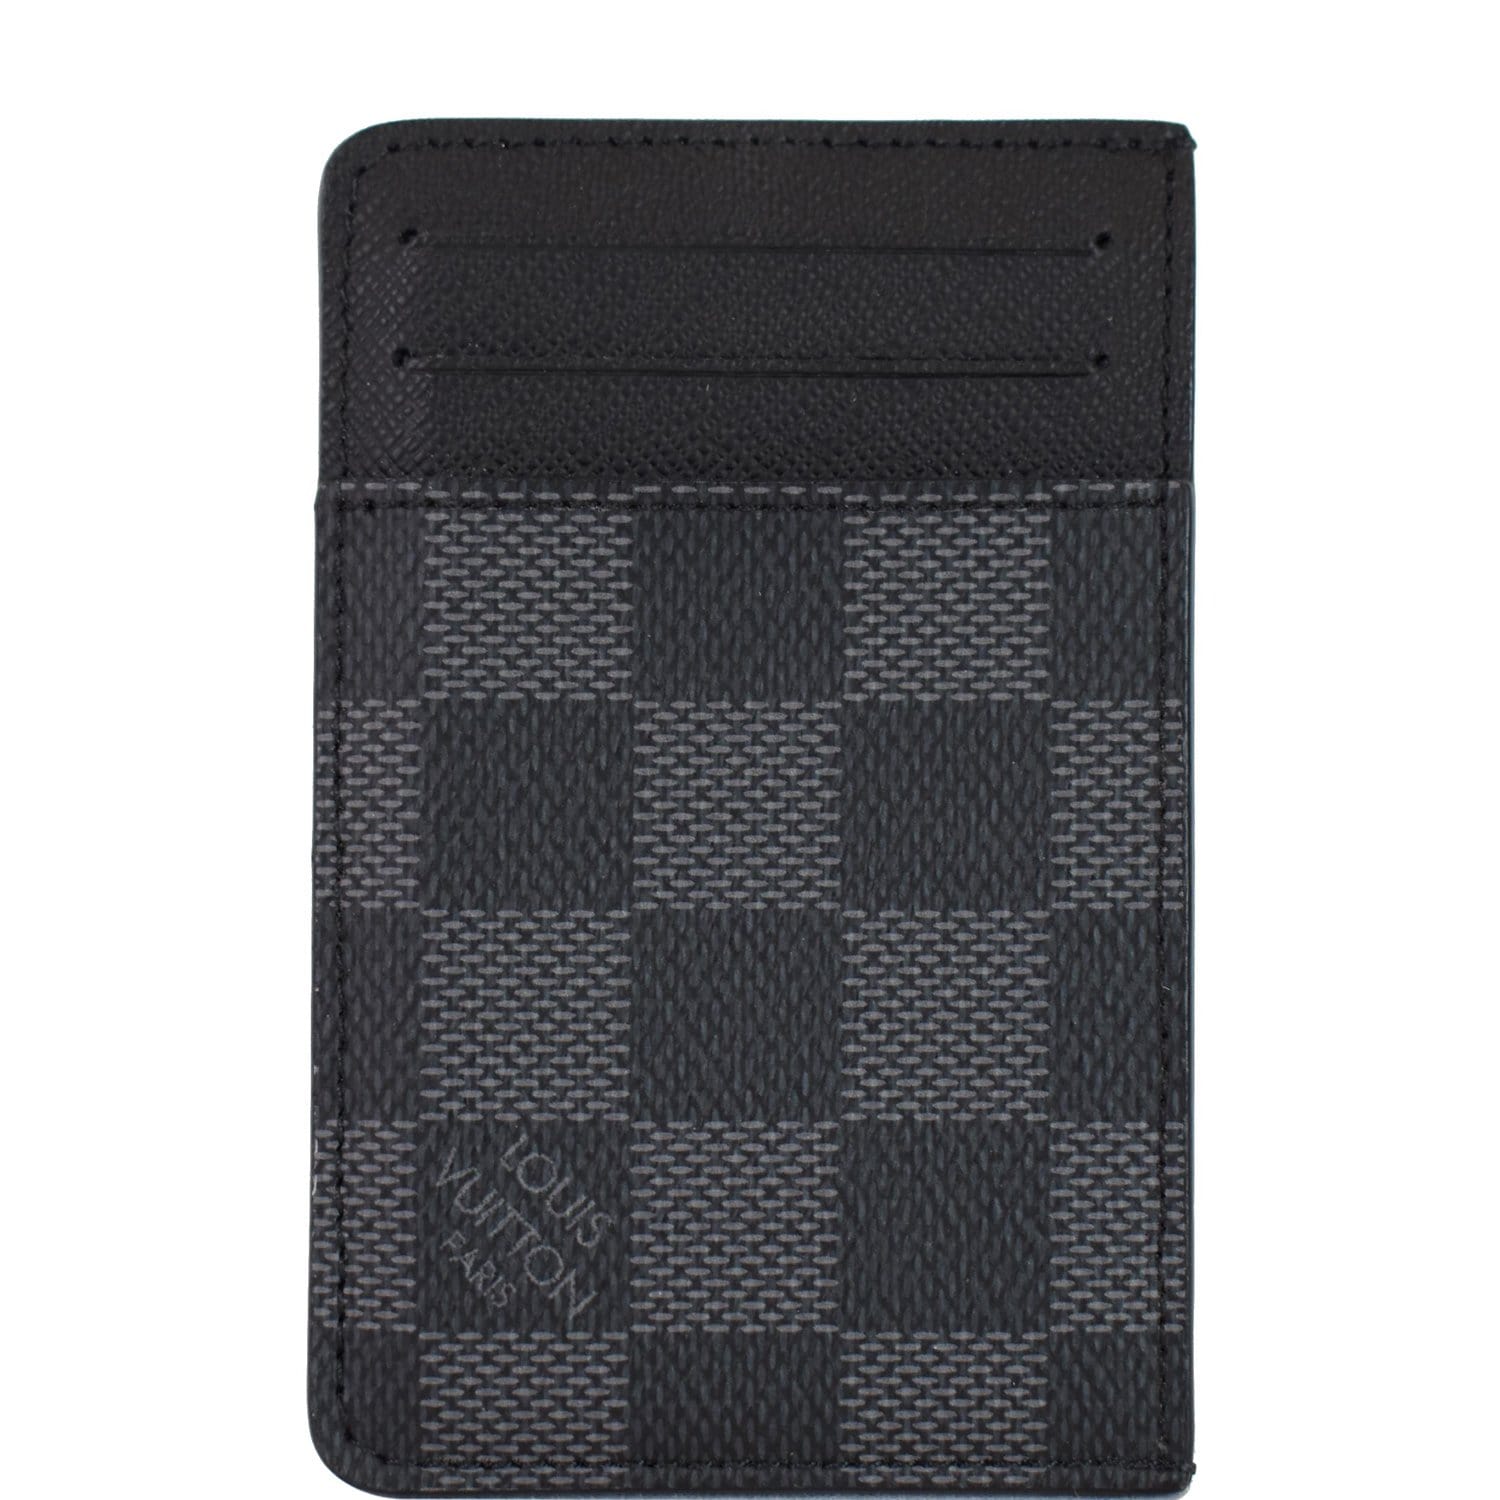 Louis Vuitton Black x Grey Damier Graphite Card Holder Wallet Case